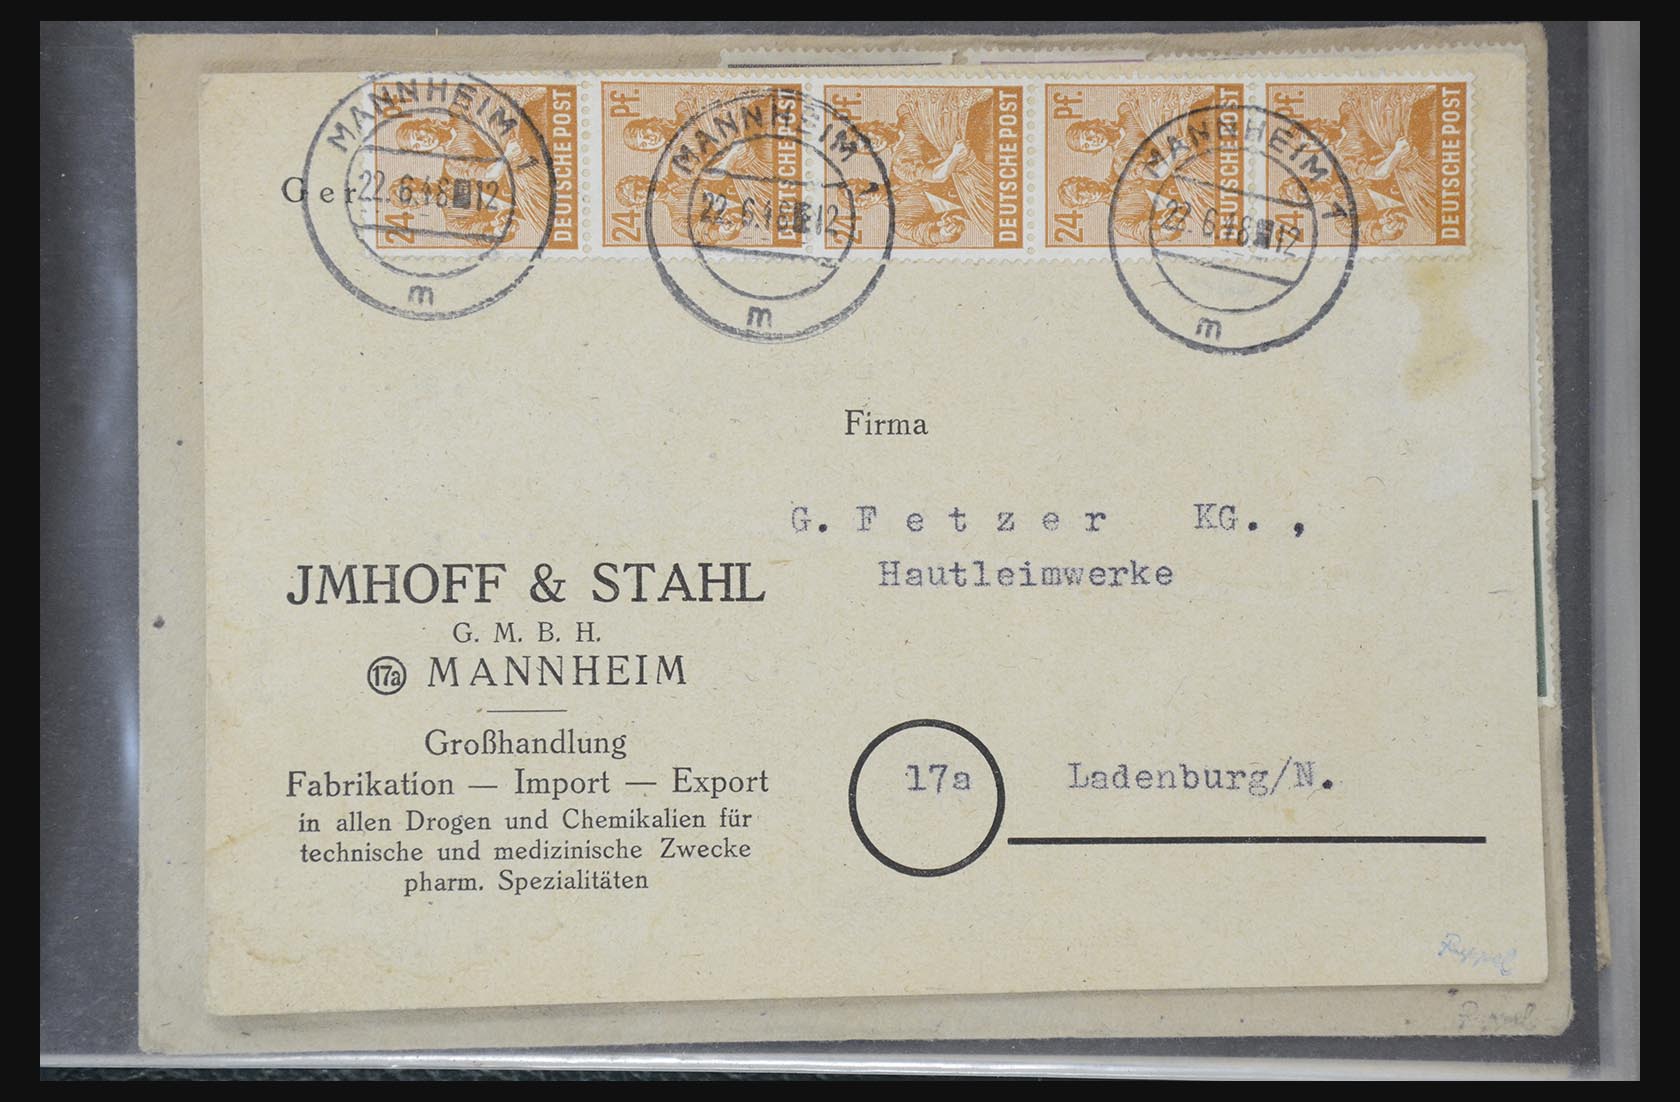 31581 024 - 31581 Duitsland brieven en FDC's 1945-1981.